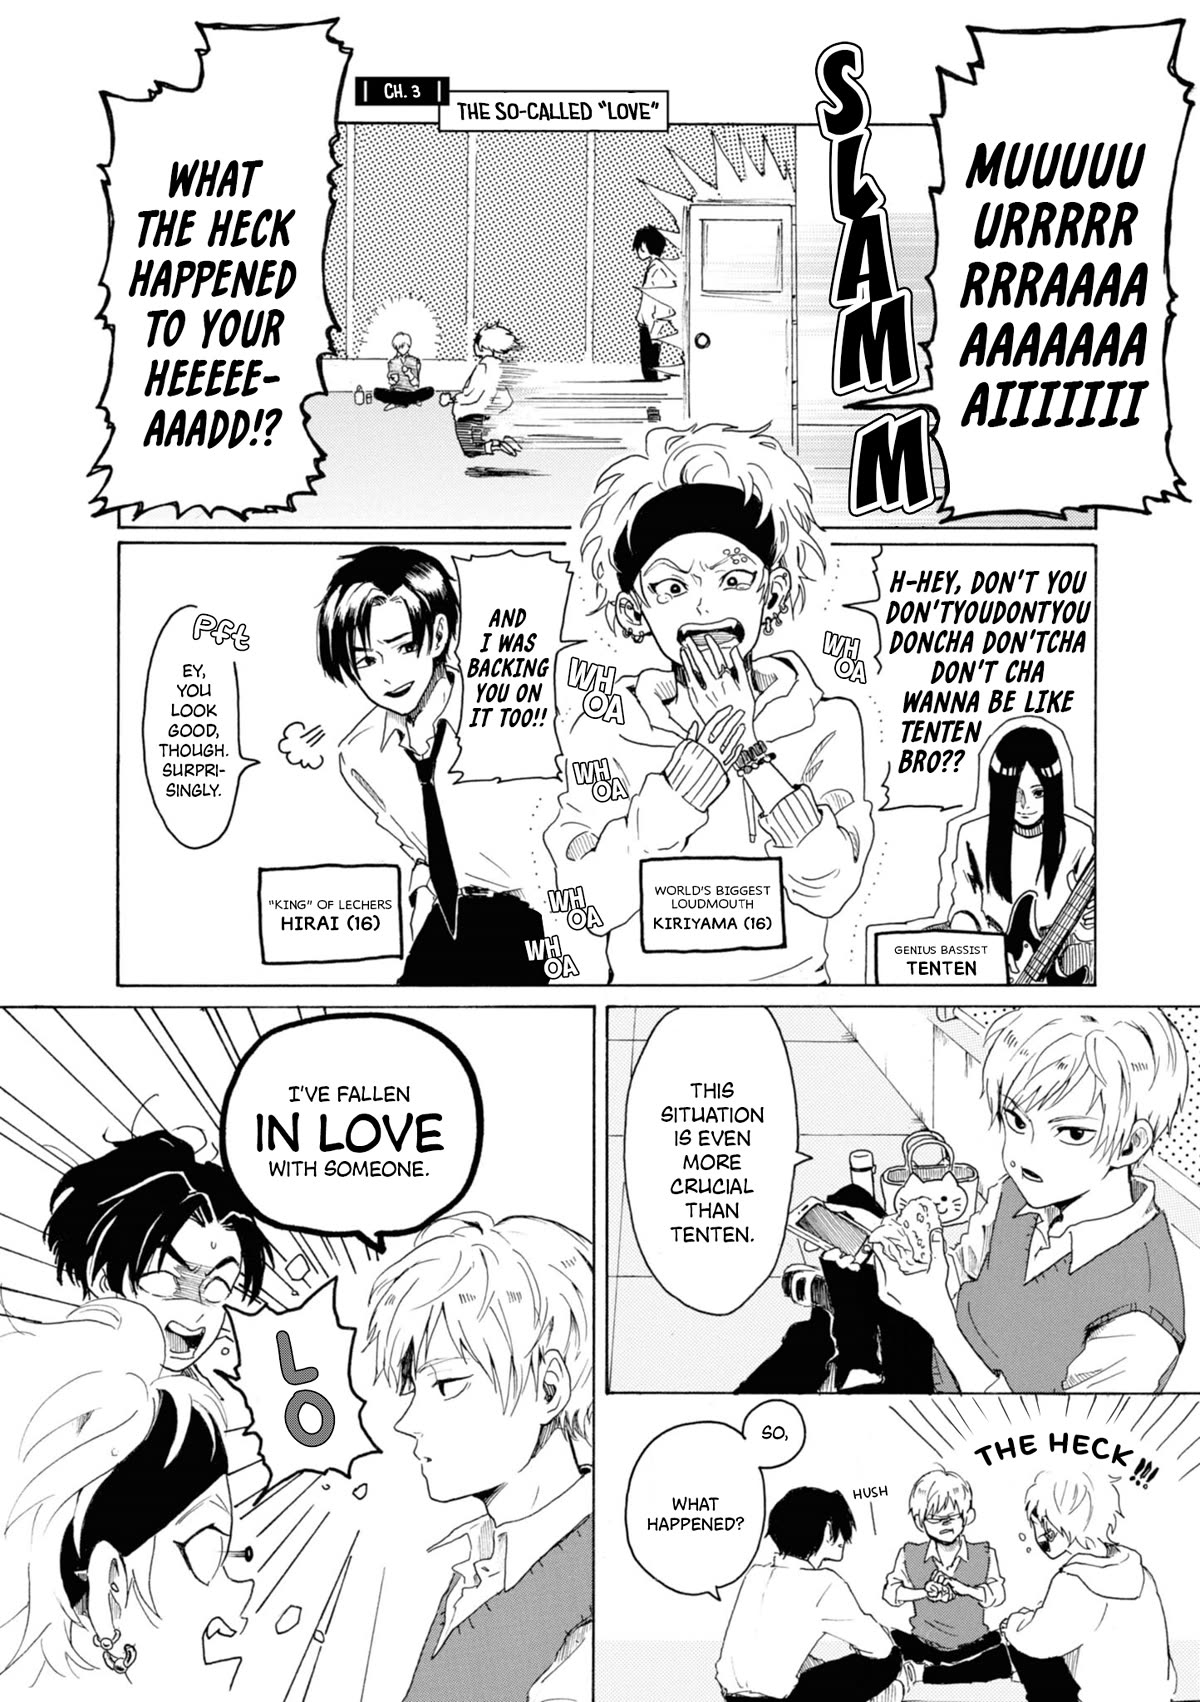 Murai's Love - Page 1